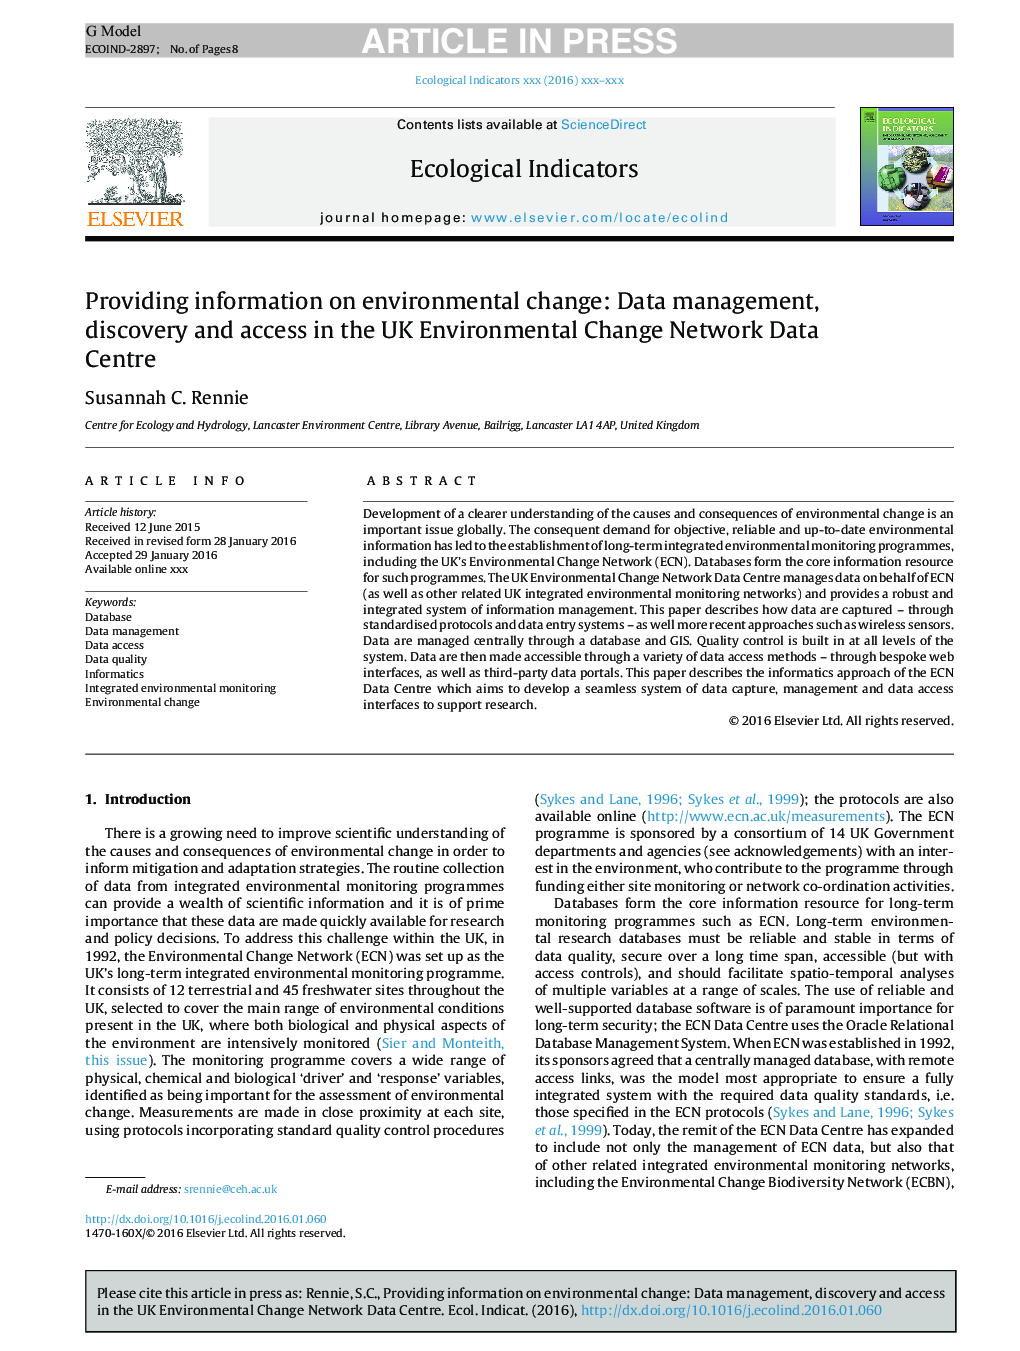 ارائه اطالعات در مورد تغییر محیط زیست: مدیریت داده، کشف و دسترسی در مرکز اطلاعات شبکه زیست محیطی بریتانیا 